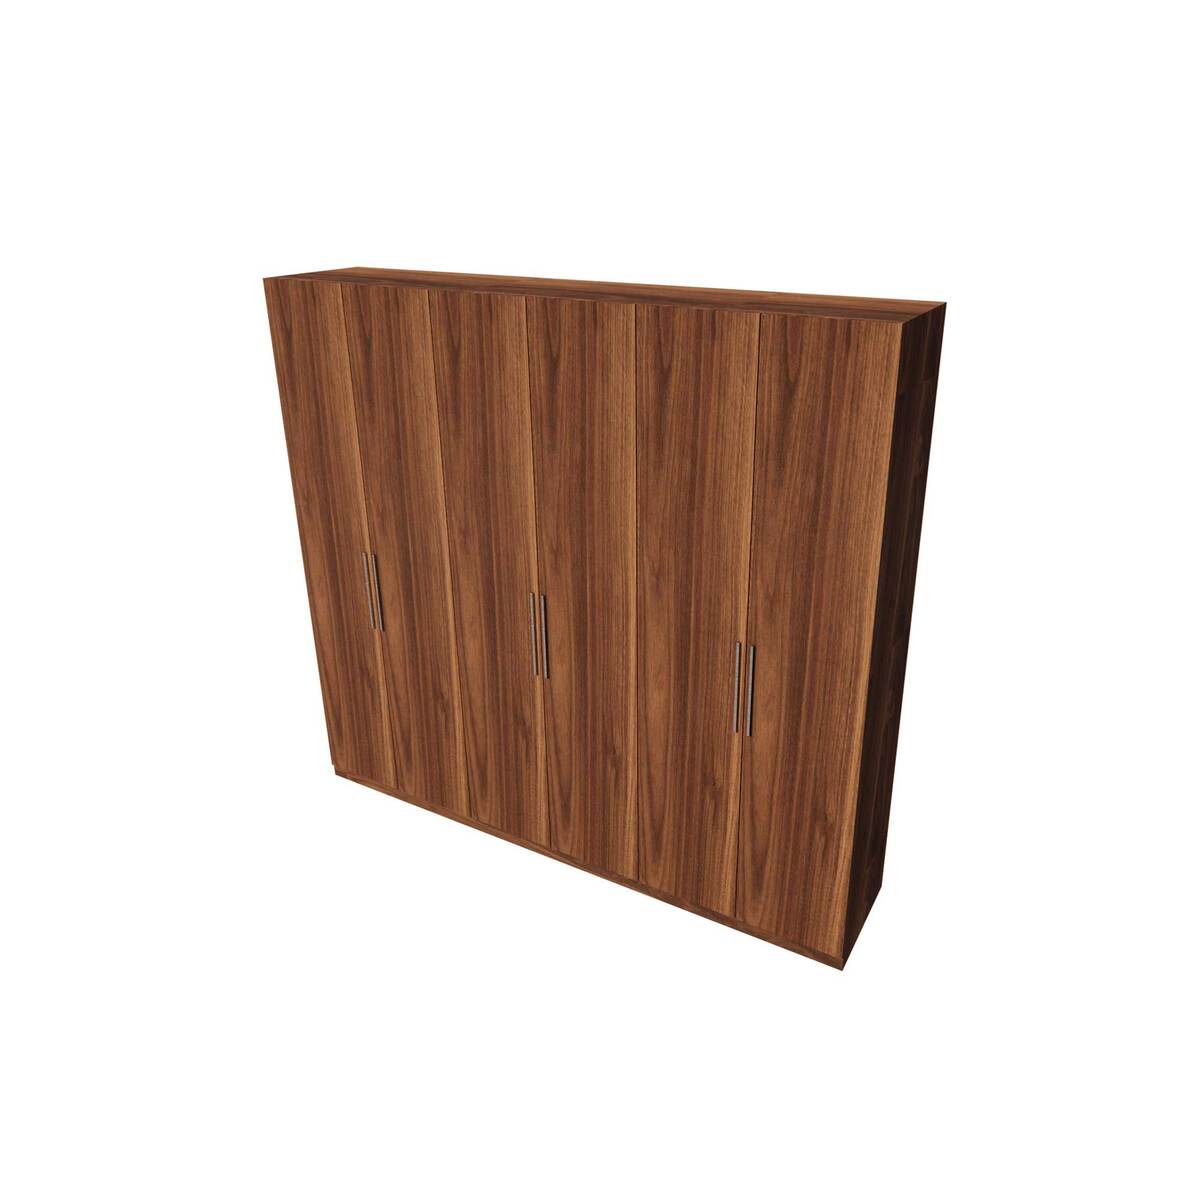 Maple Leaf Wardrobe Walnut,6 Doors Size:220x60x240 Cms (HxWxL)